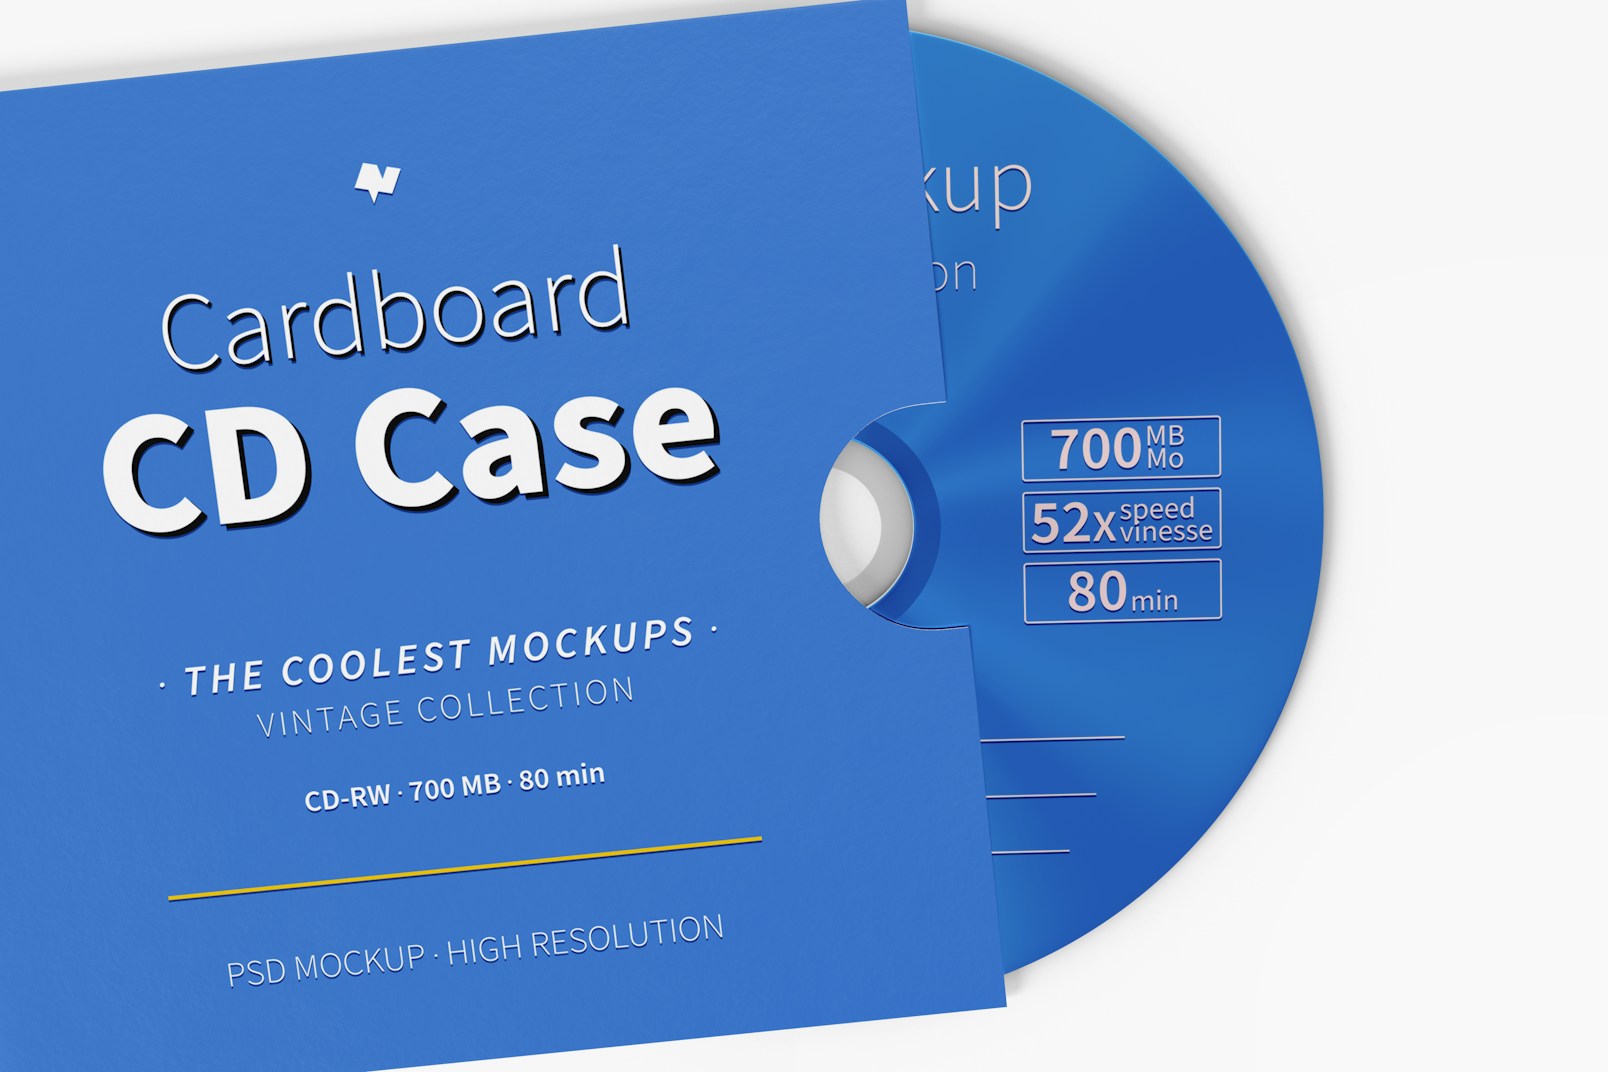 Cardboard CD Case Mockup, Close Up